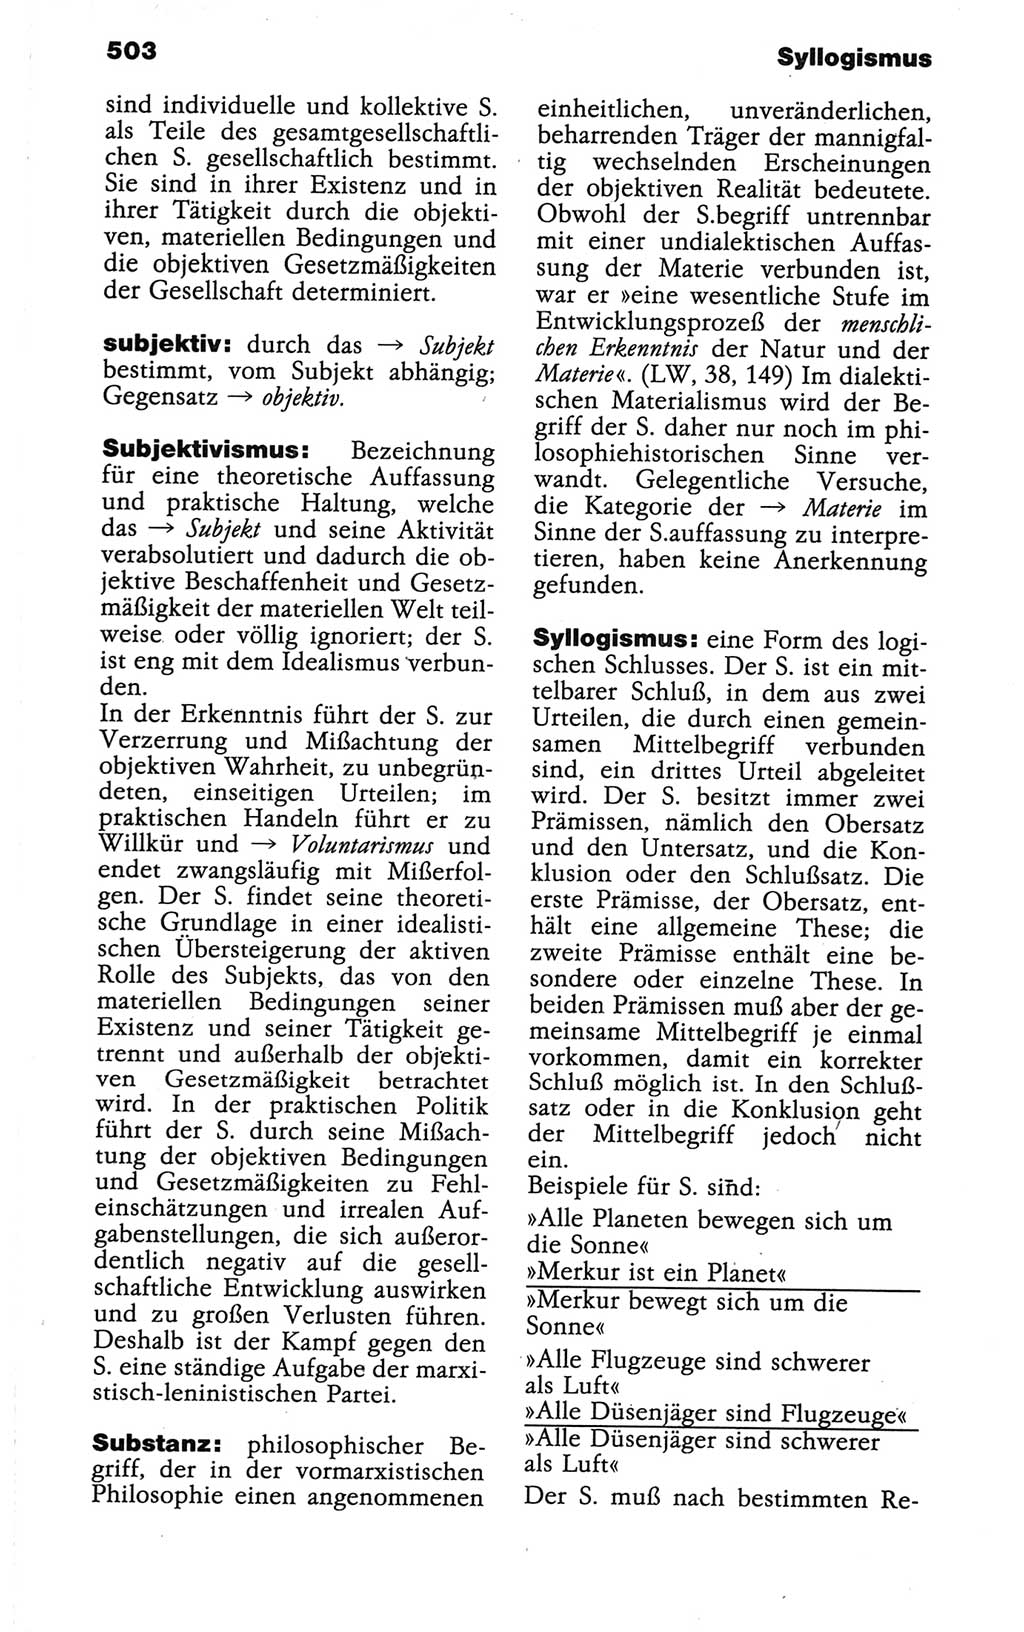 Wörterbuch der marxistisch-leninistischen Philosophie [Deutsche Demokratische Republik (DDR)] 1986, Seite 503 (Wb. ML Phil. DDR 1986, S. 503)